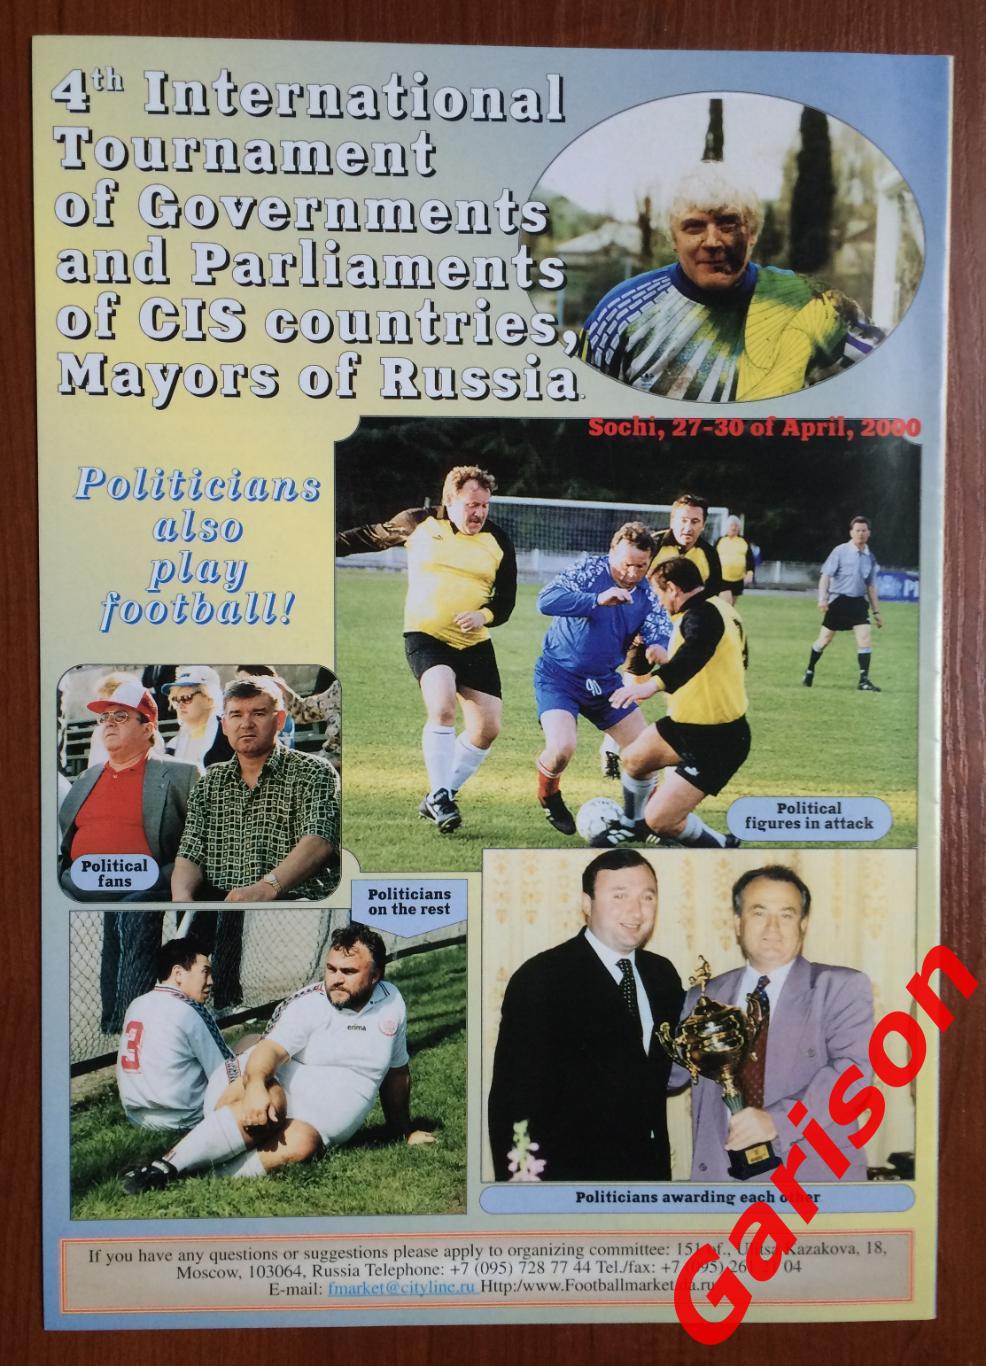 Журнал Футбол Маркет № 2 (2) 2000 год 1